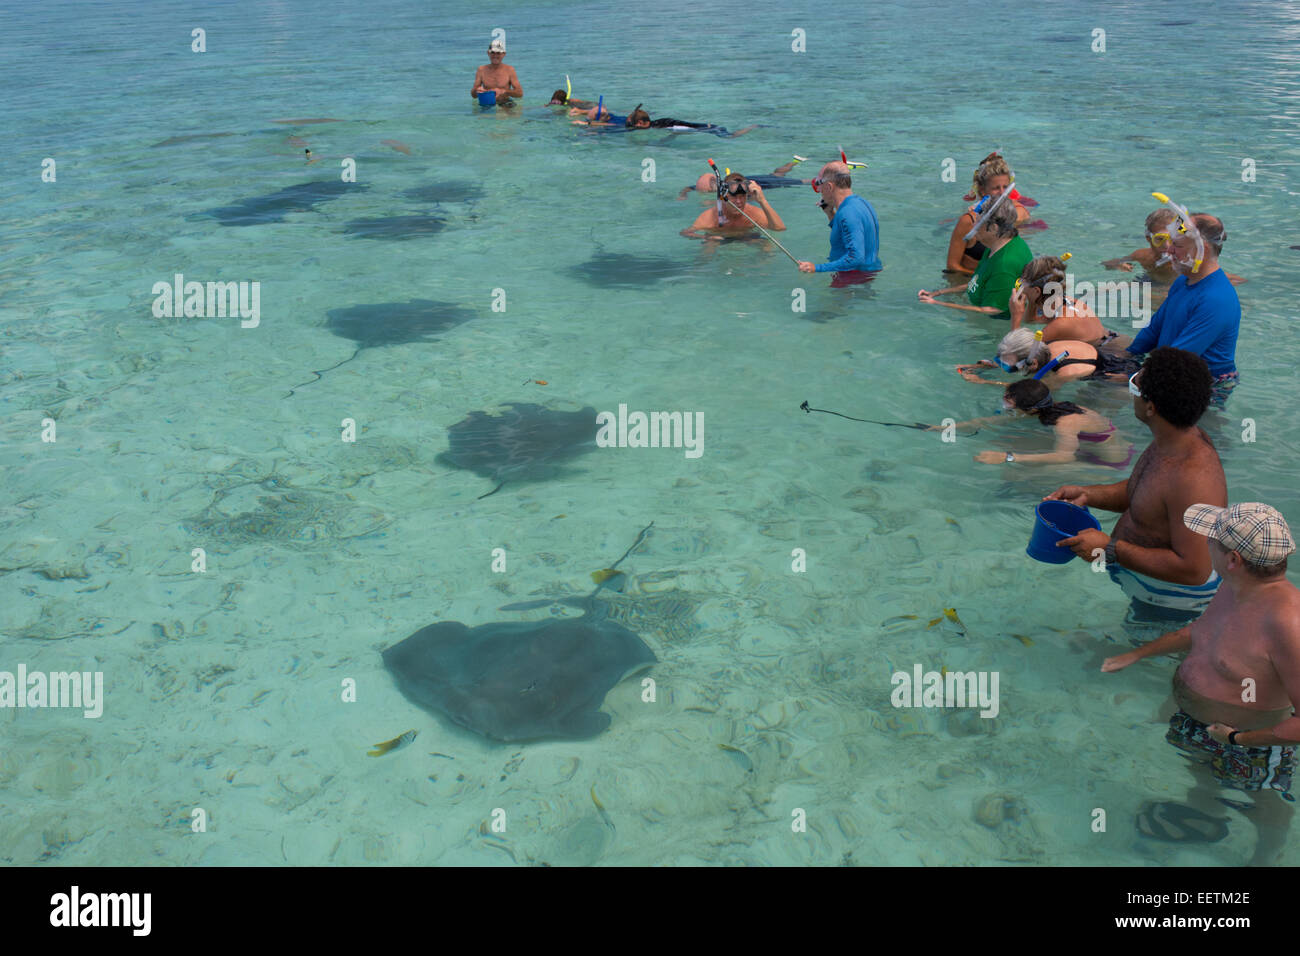 Polinesia francese Isole della Società, Isole Sottovento, Bora Bora. Attrazioni famose a Bora Bora è il nuoto con i raggi. Foto Stock